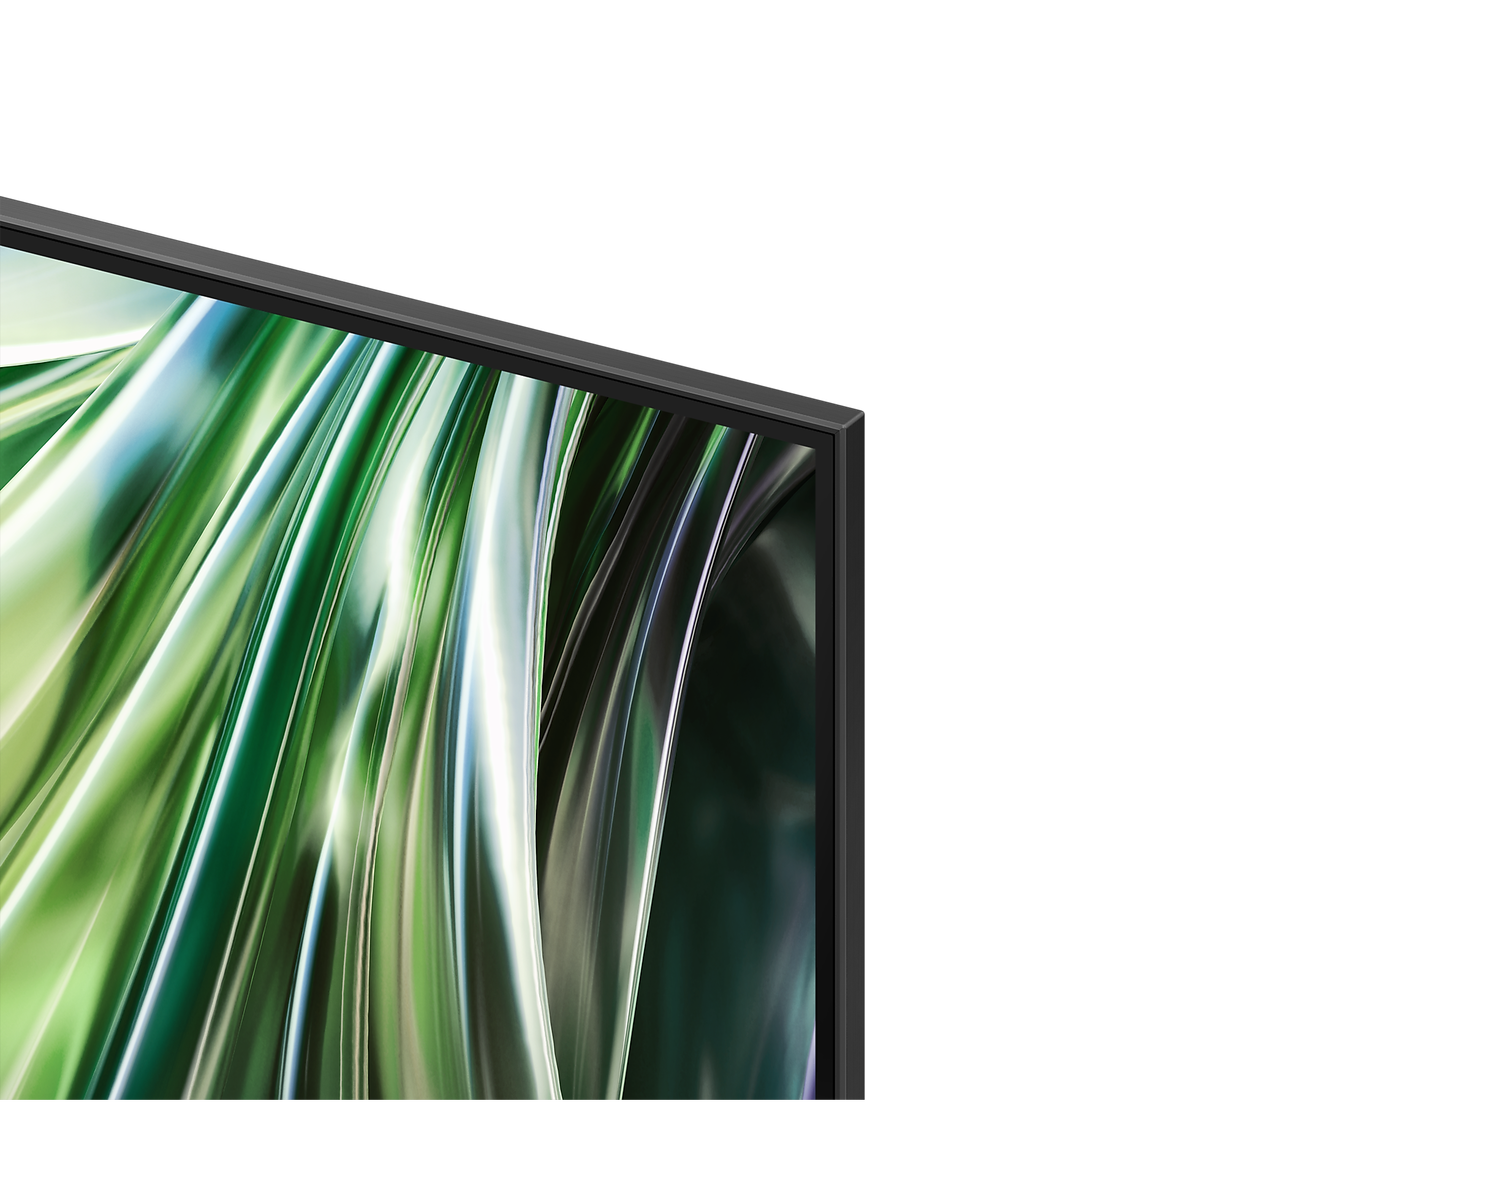 Samsung QE50QN93DATXXN Neo QLED smart televisie